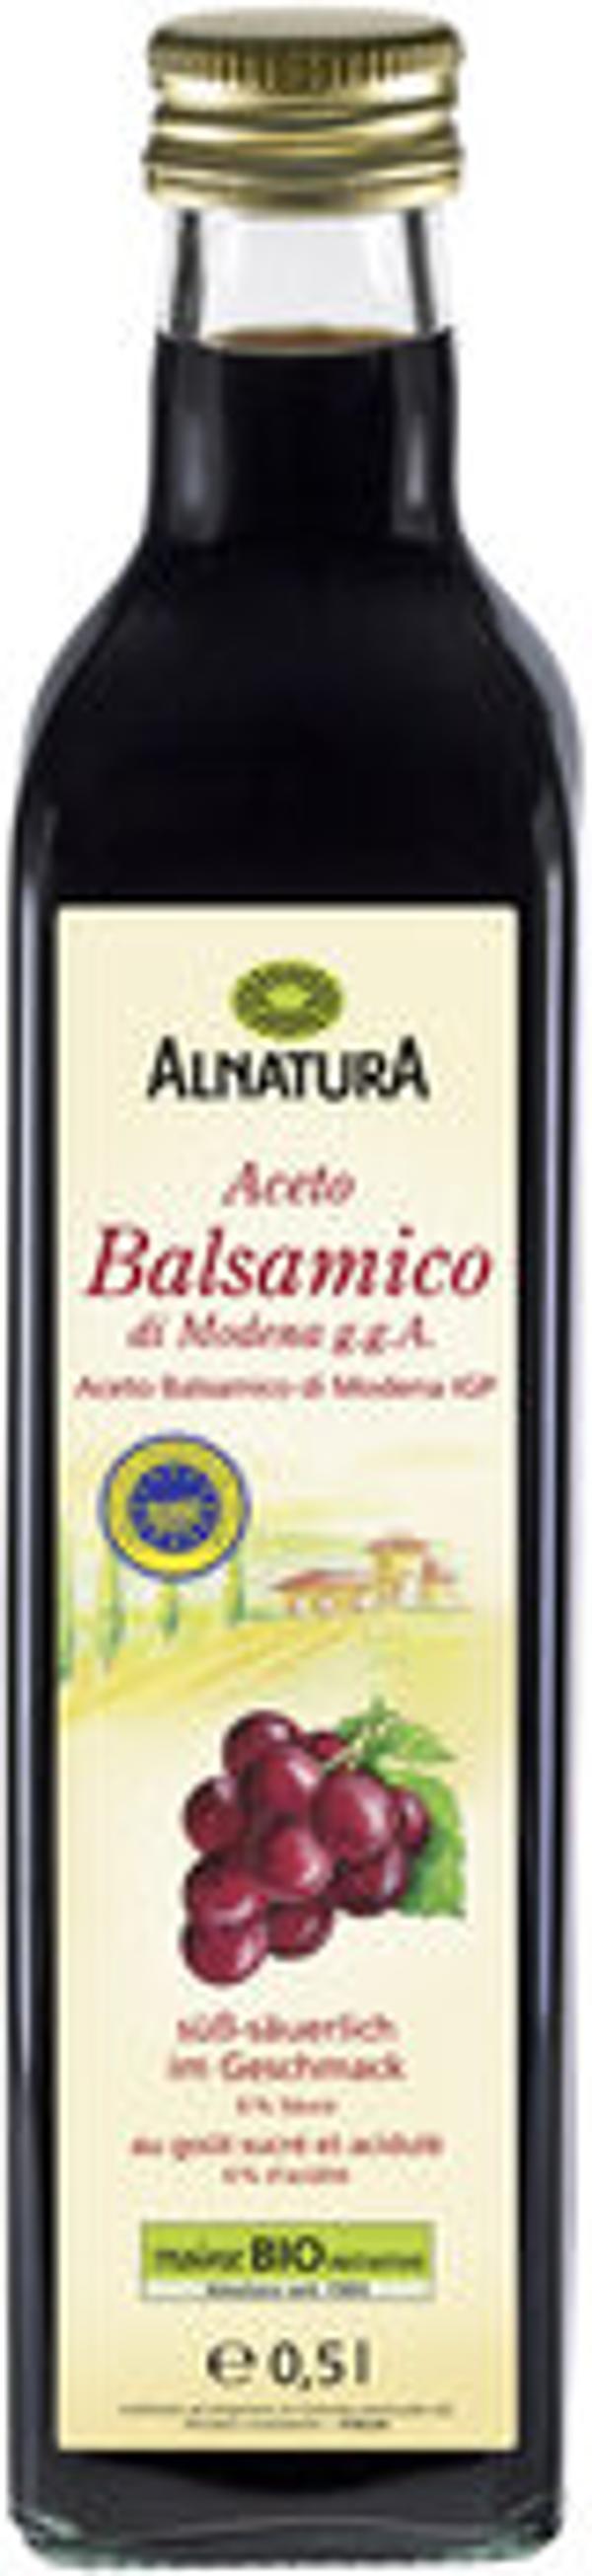 Produktfoto zu Alnatura Aceto Balsamico di Modena 0,5L